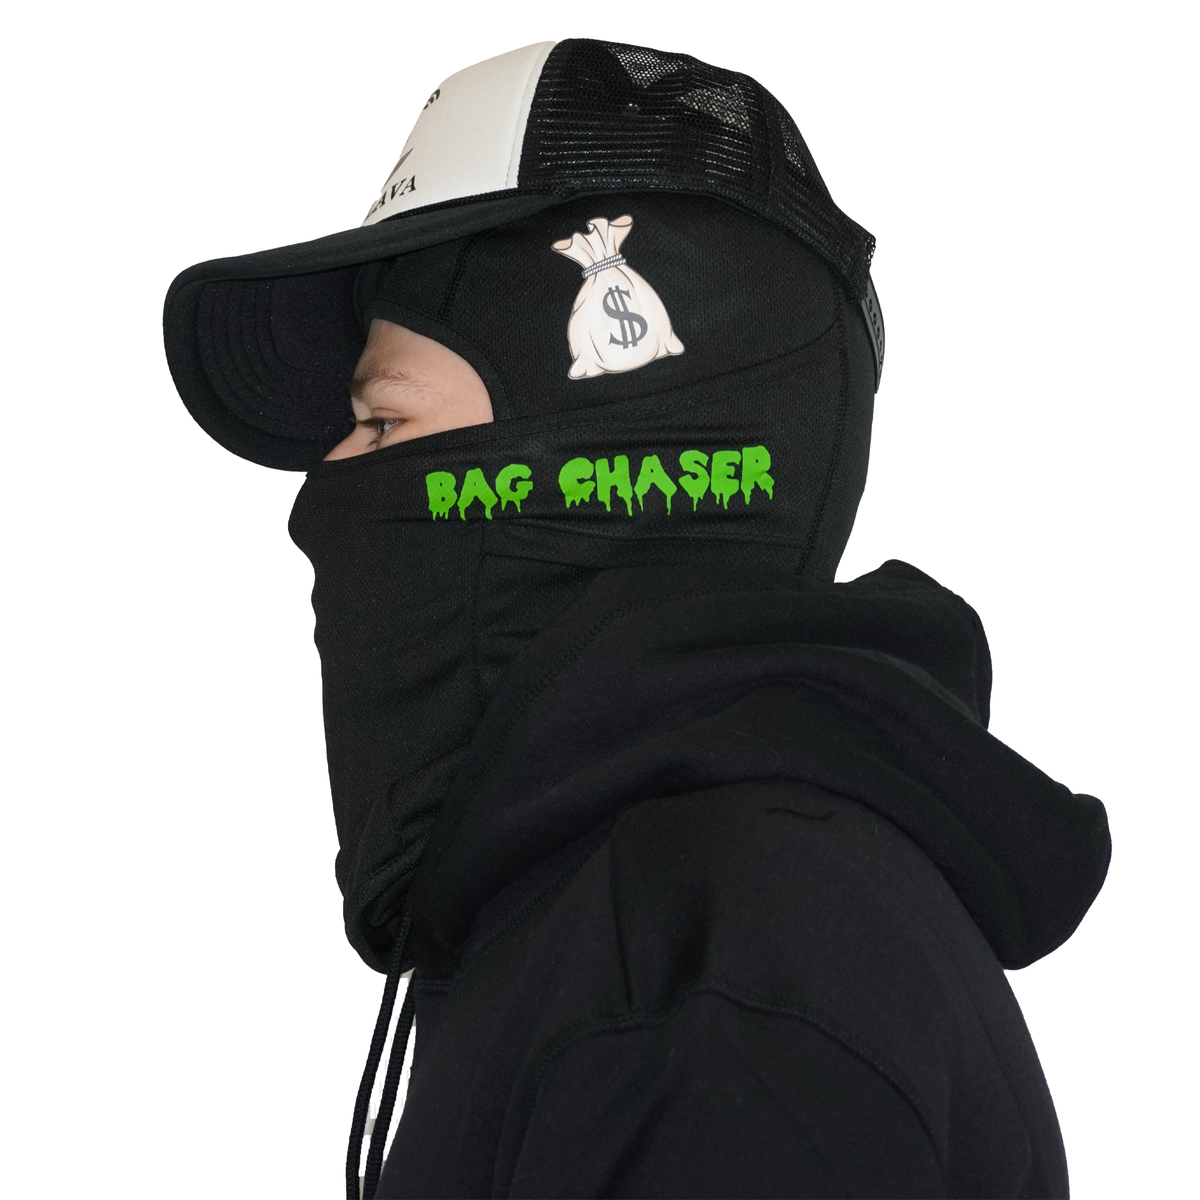 Bag Chaser Money Bag Lightweight Balaclava Ski mask - GCBalaclavas